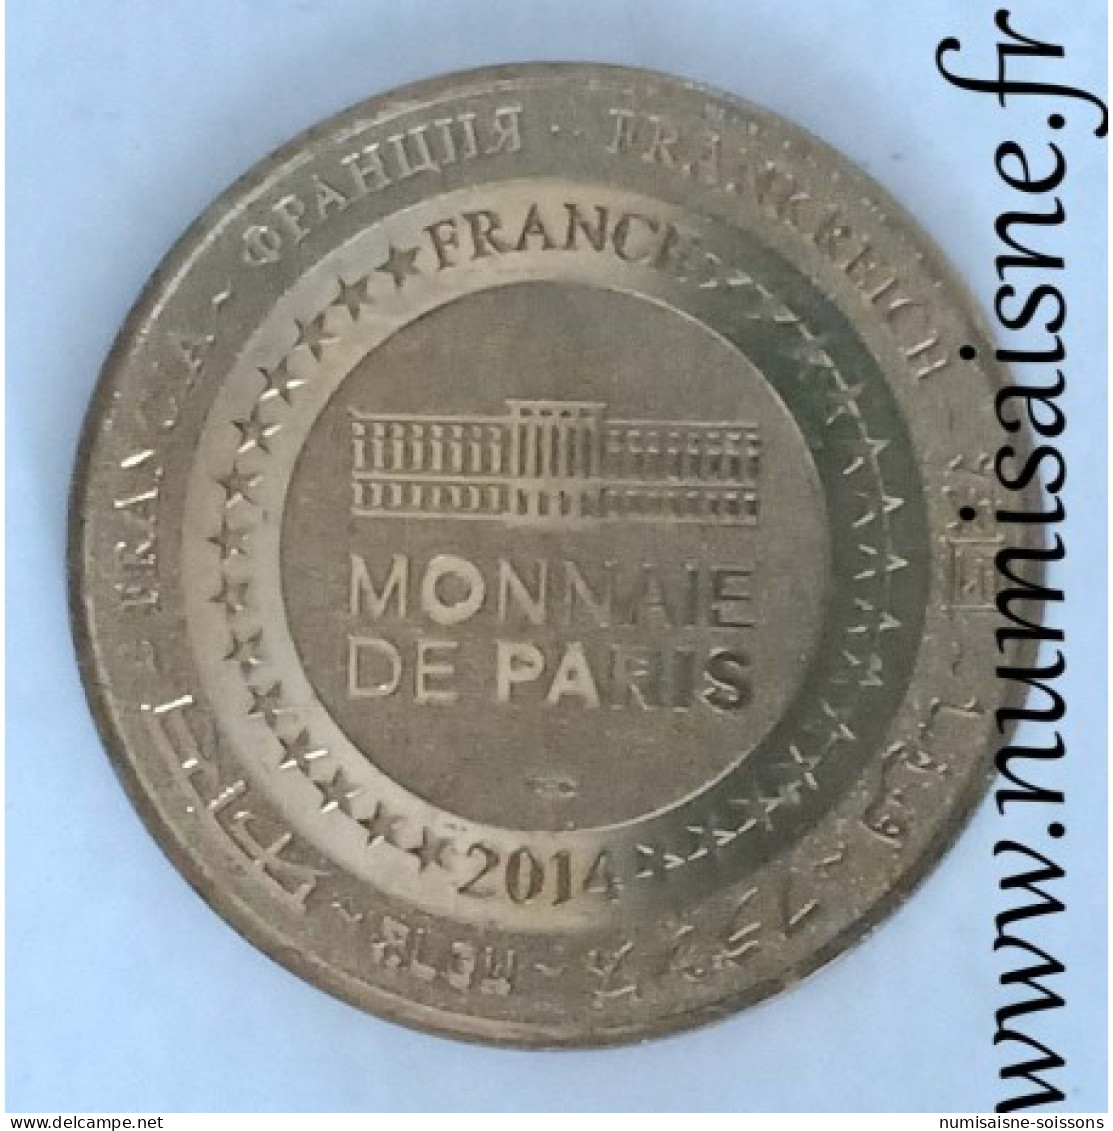 BELGIQUE - LEPER - PARC BELLEWAERDE - Monnaie De Paris - 2014 -  - 2016